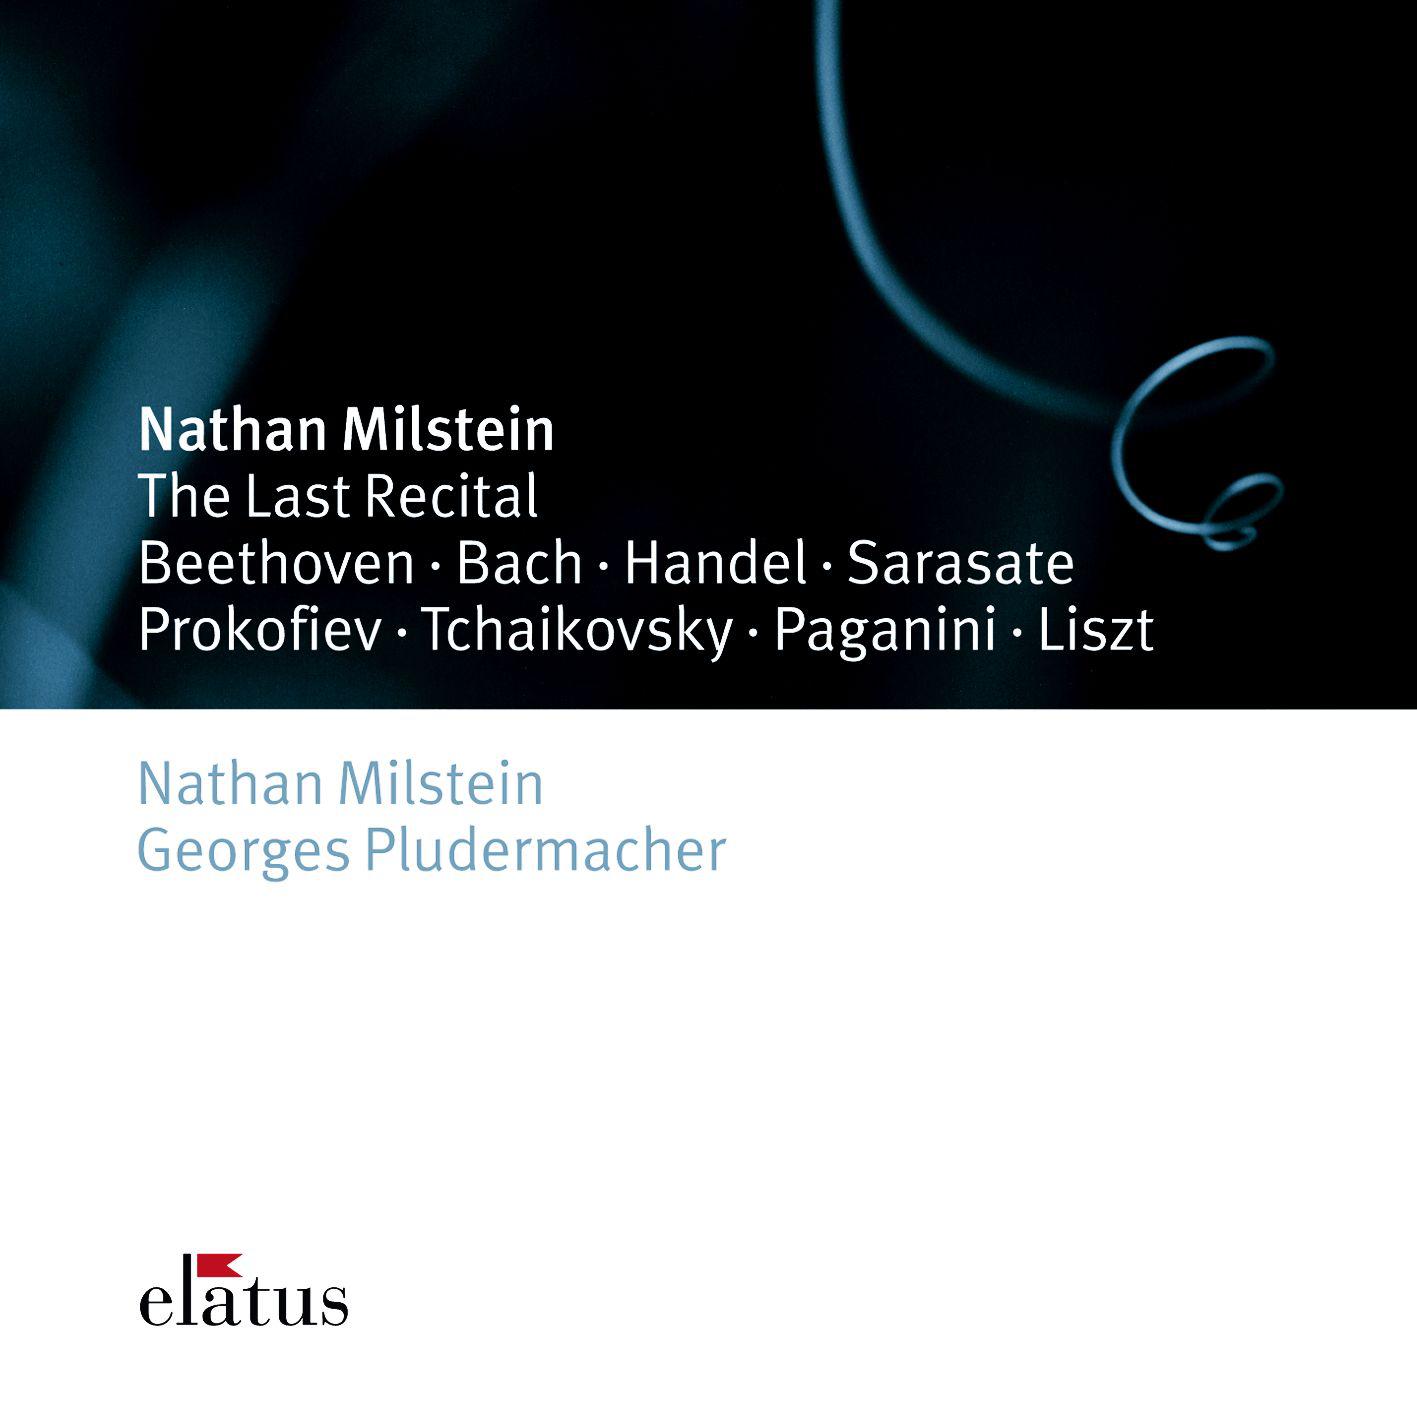 Georges Pludermacher - Violin Sonata in A Major, Op. 1 No. 3, HWV 361:III. Adagio